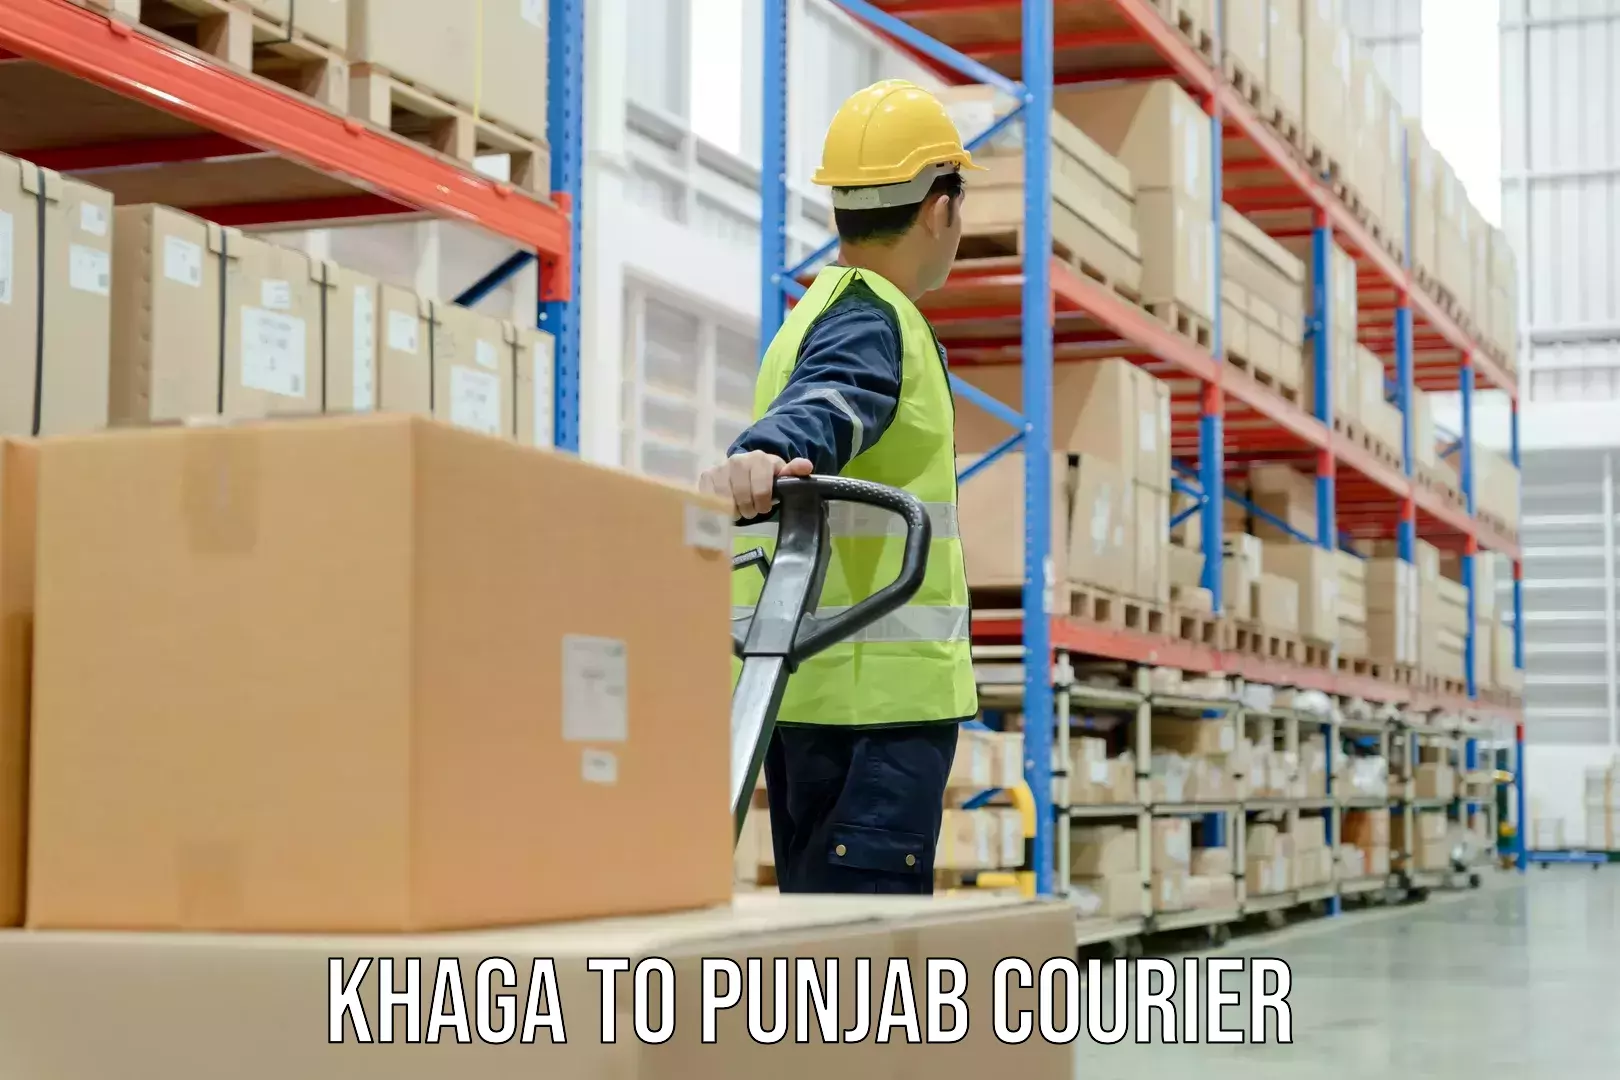 24-hour courier service Khaga to Punjab